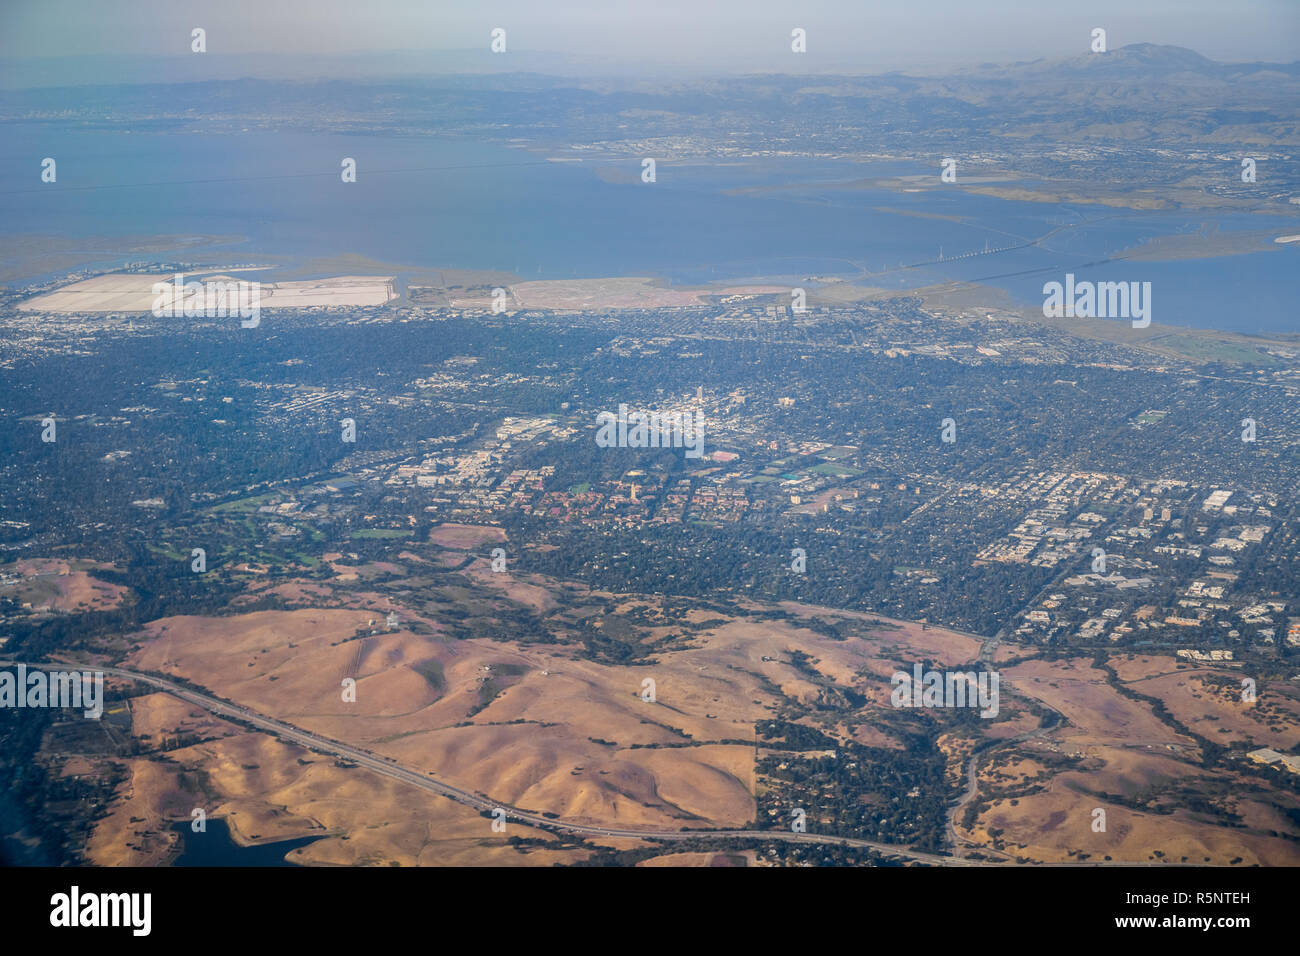 Vista aérea de las ciudades (Silicon Valley, Palo Alto, Menlo Park, Redwood City); East Bay y Mt Diablo en el fondo; el área de la bahía de San Francisco, Californi Foto de stock